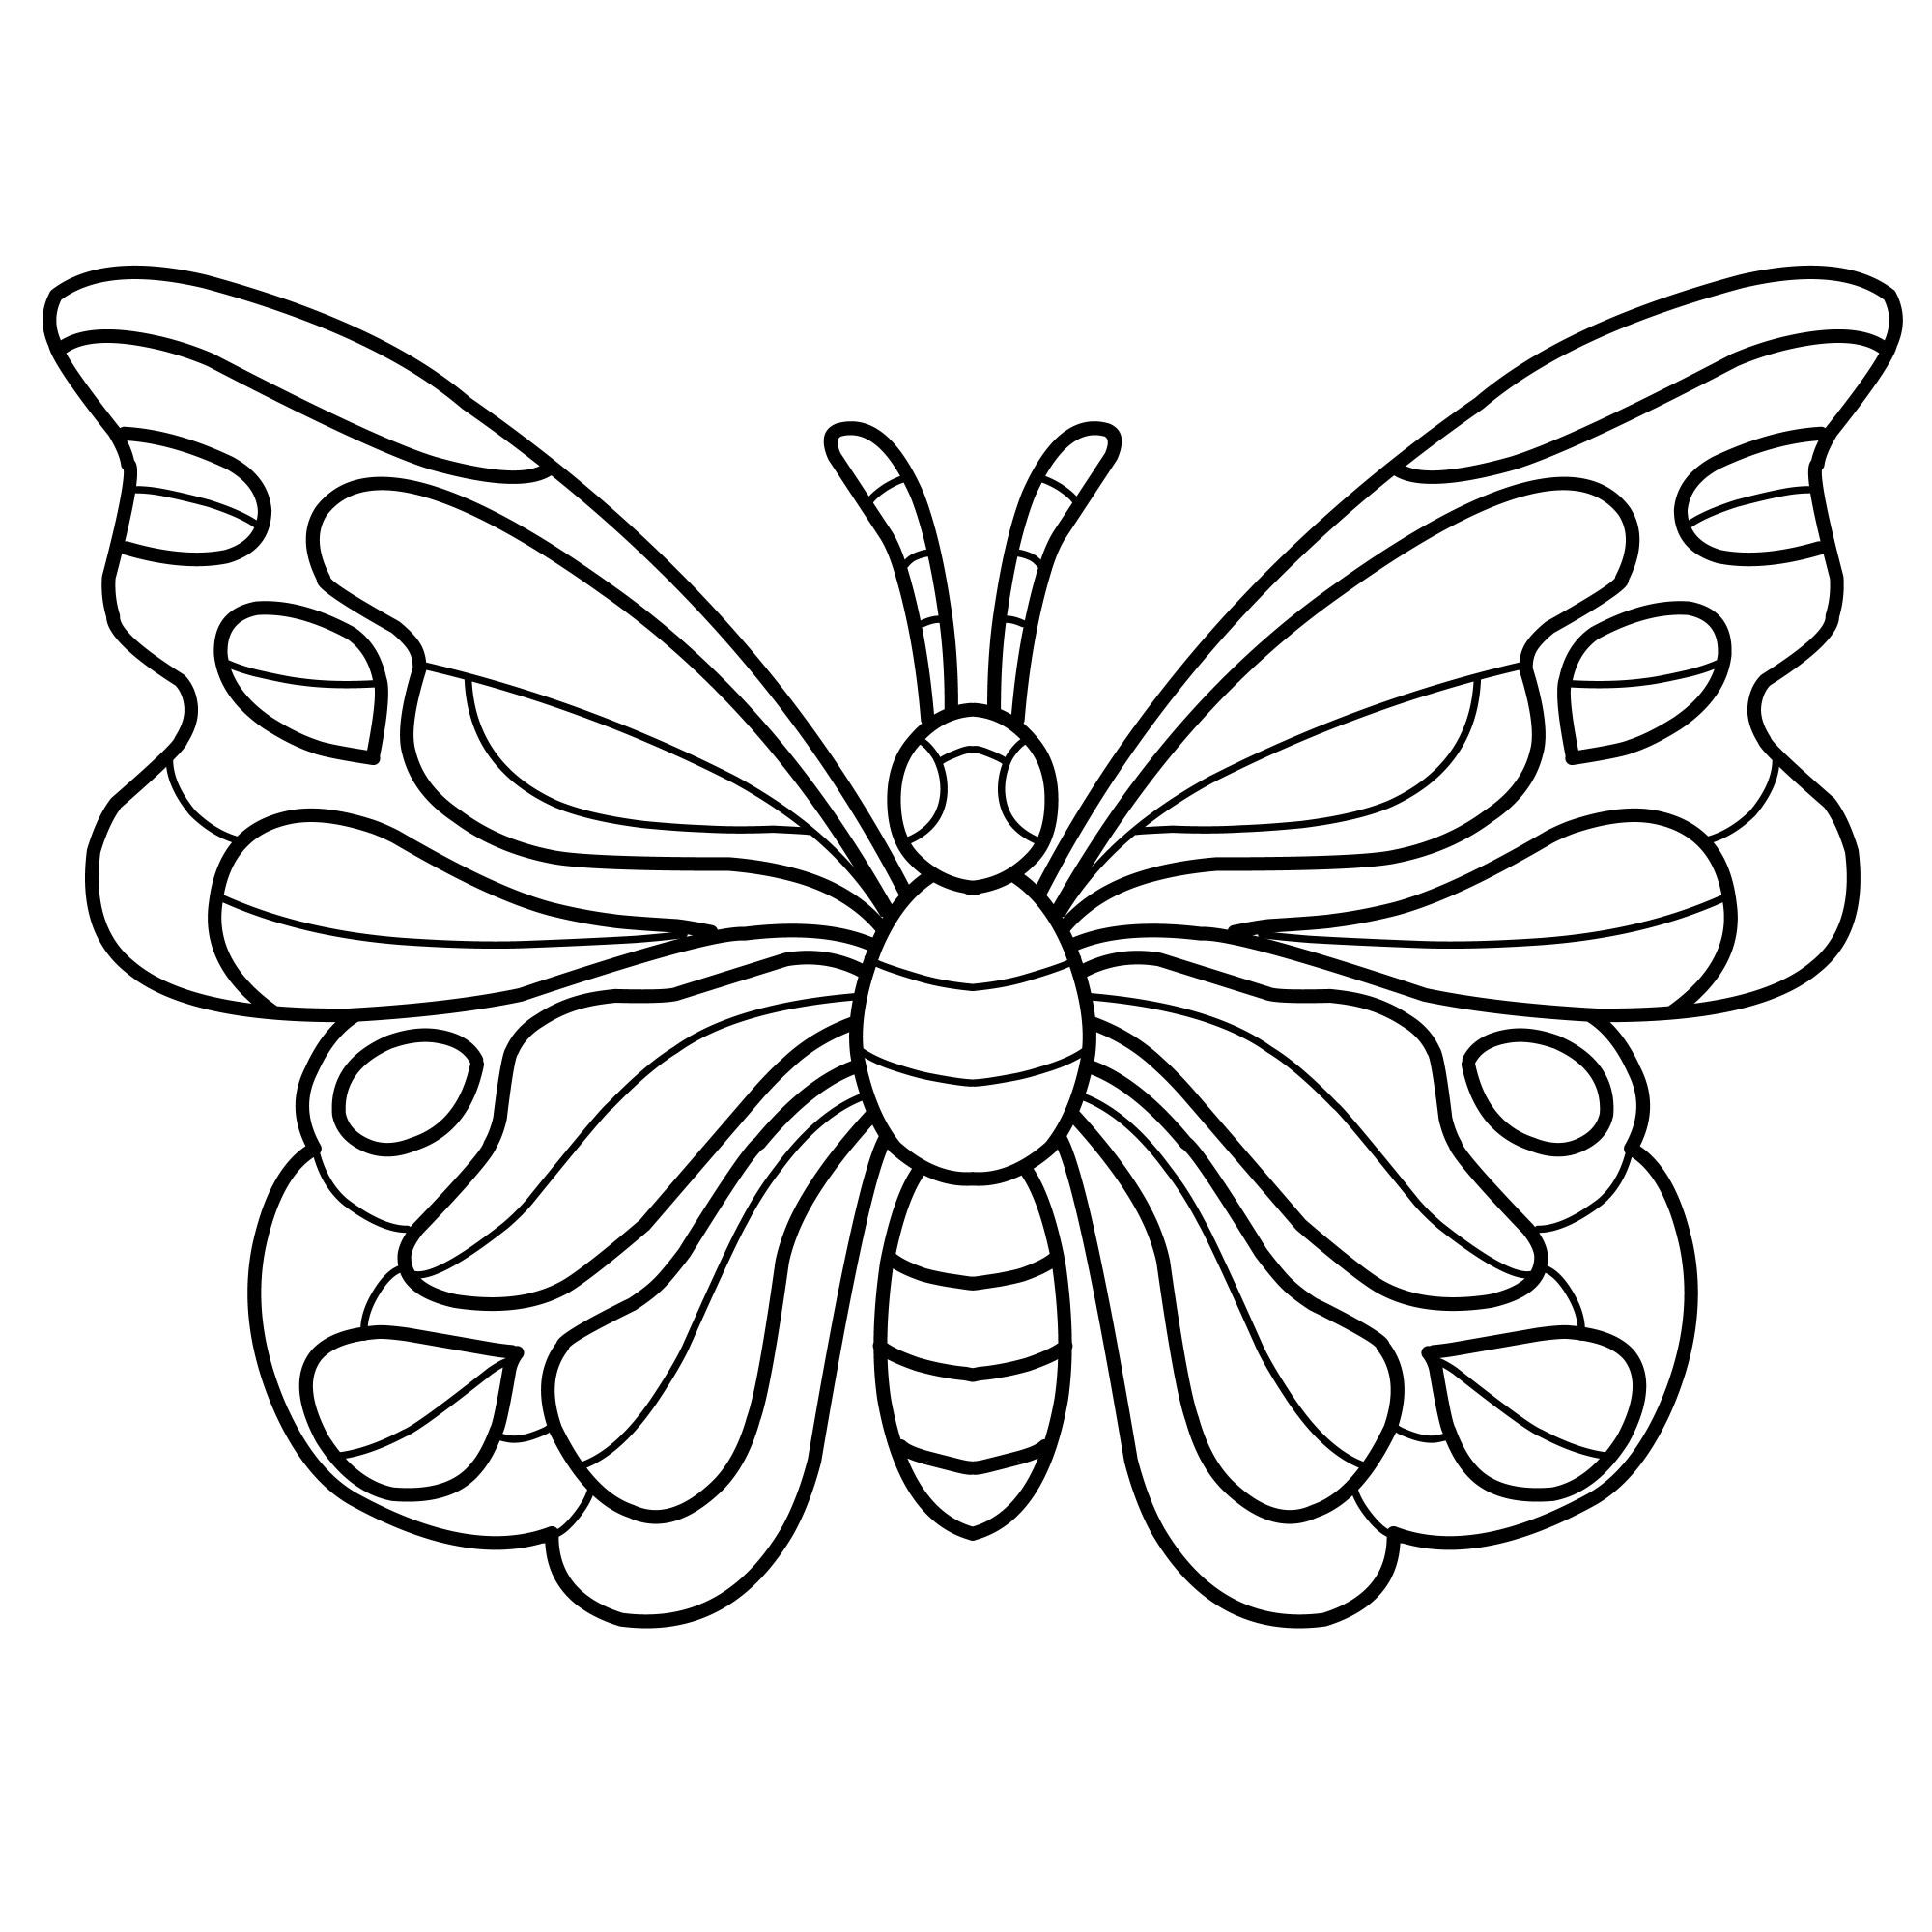 Раскраска для детей: бабочка с узорчатыми крыльями